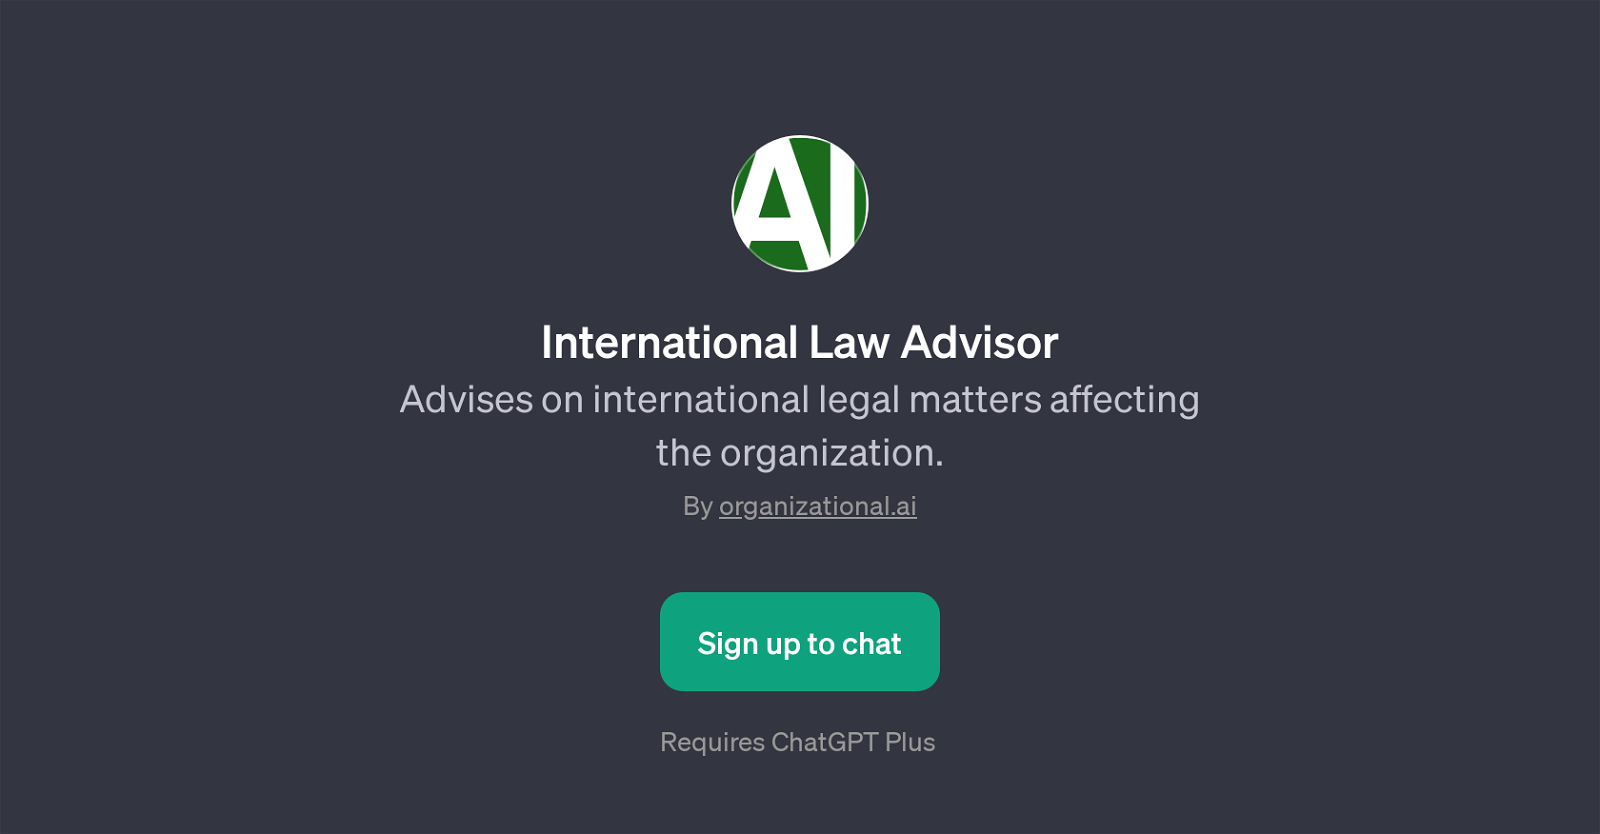 International Law Advisor website